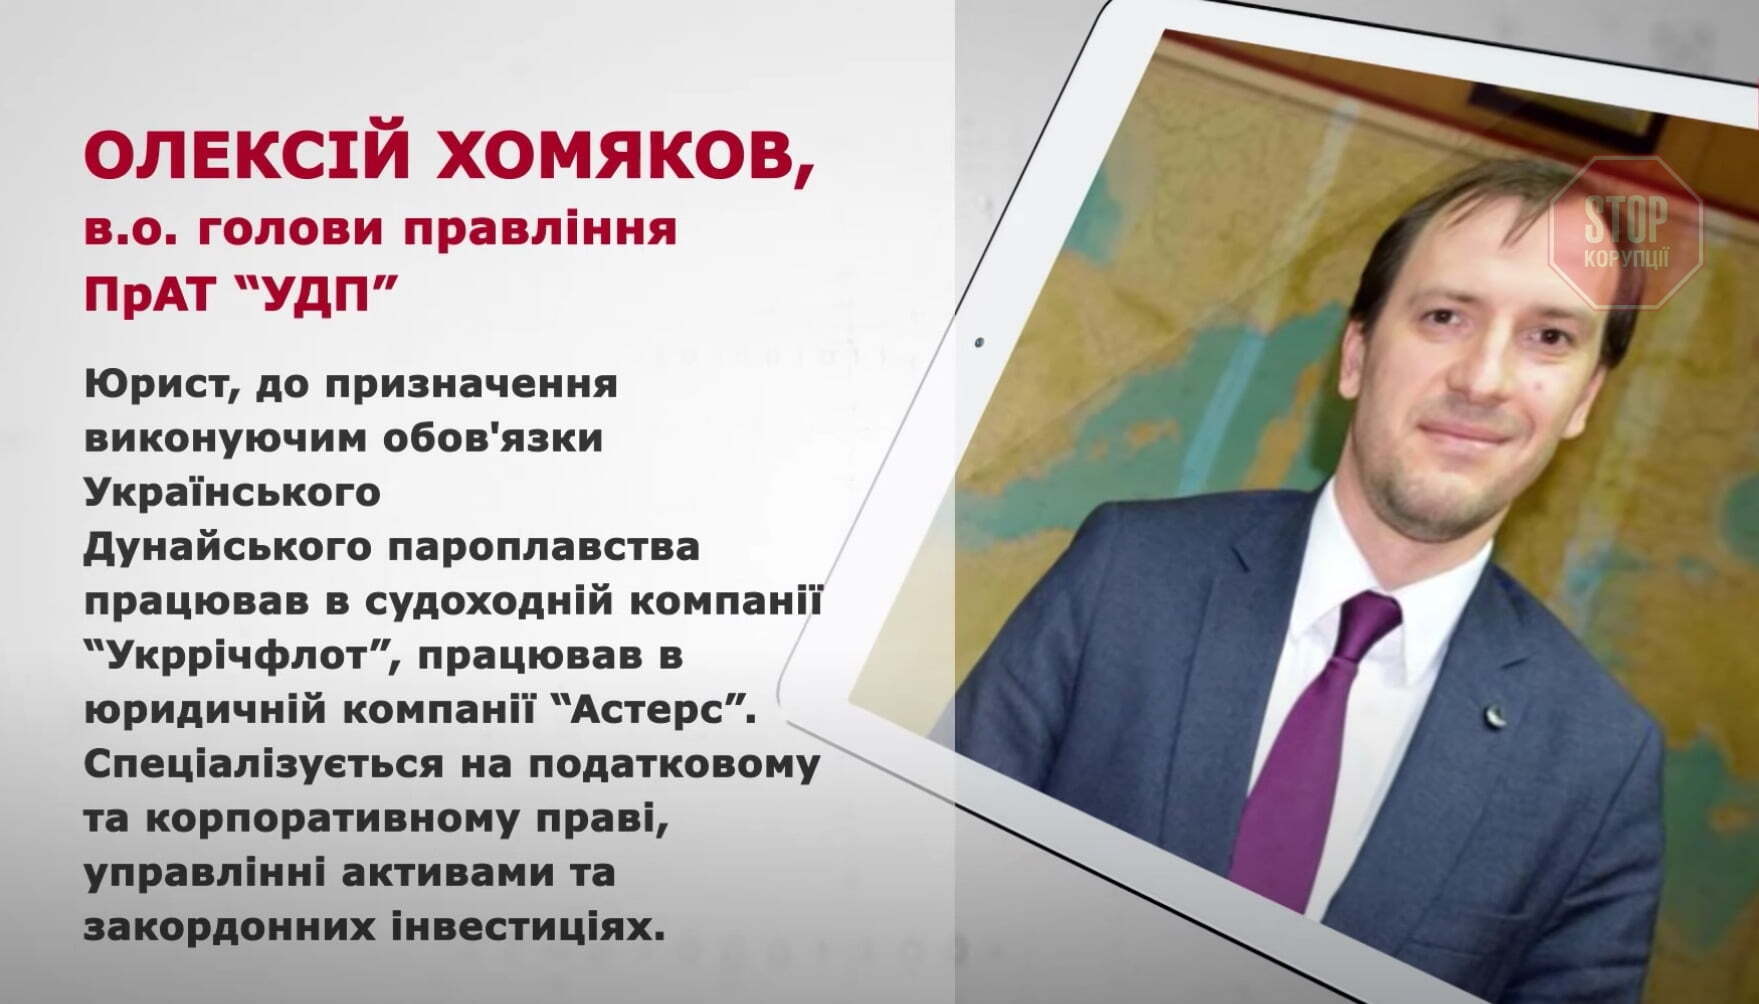 Новым главой УДП стал Алексей Хомяков